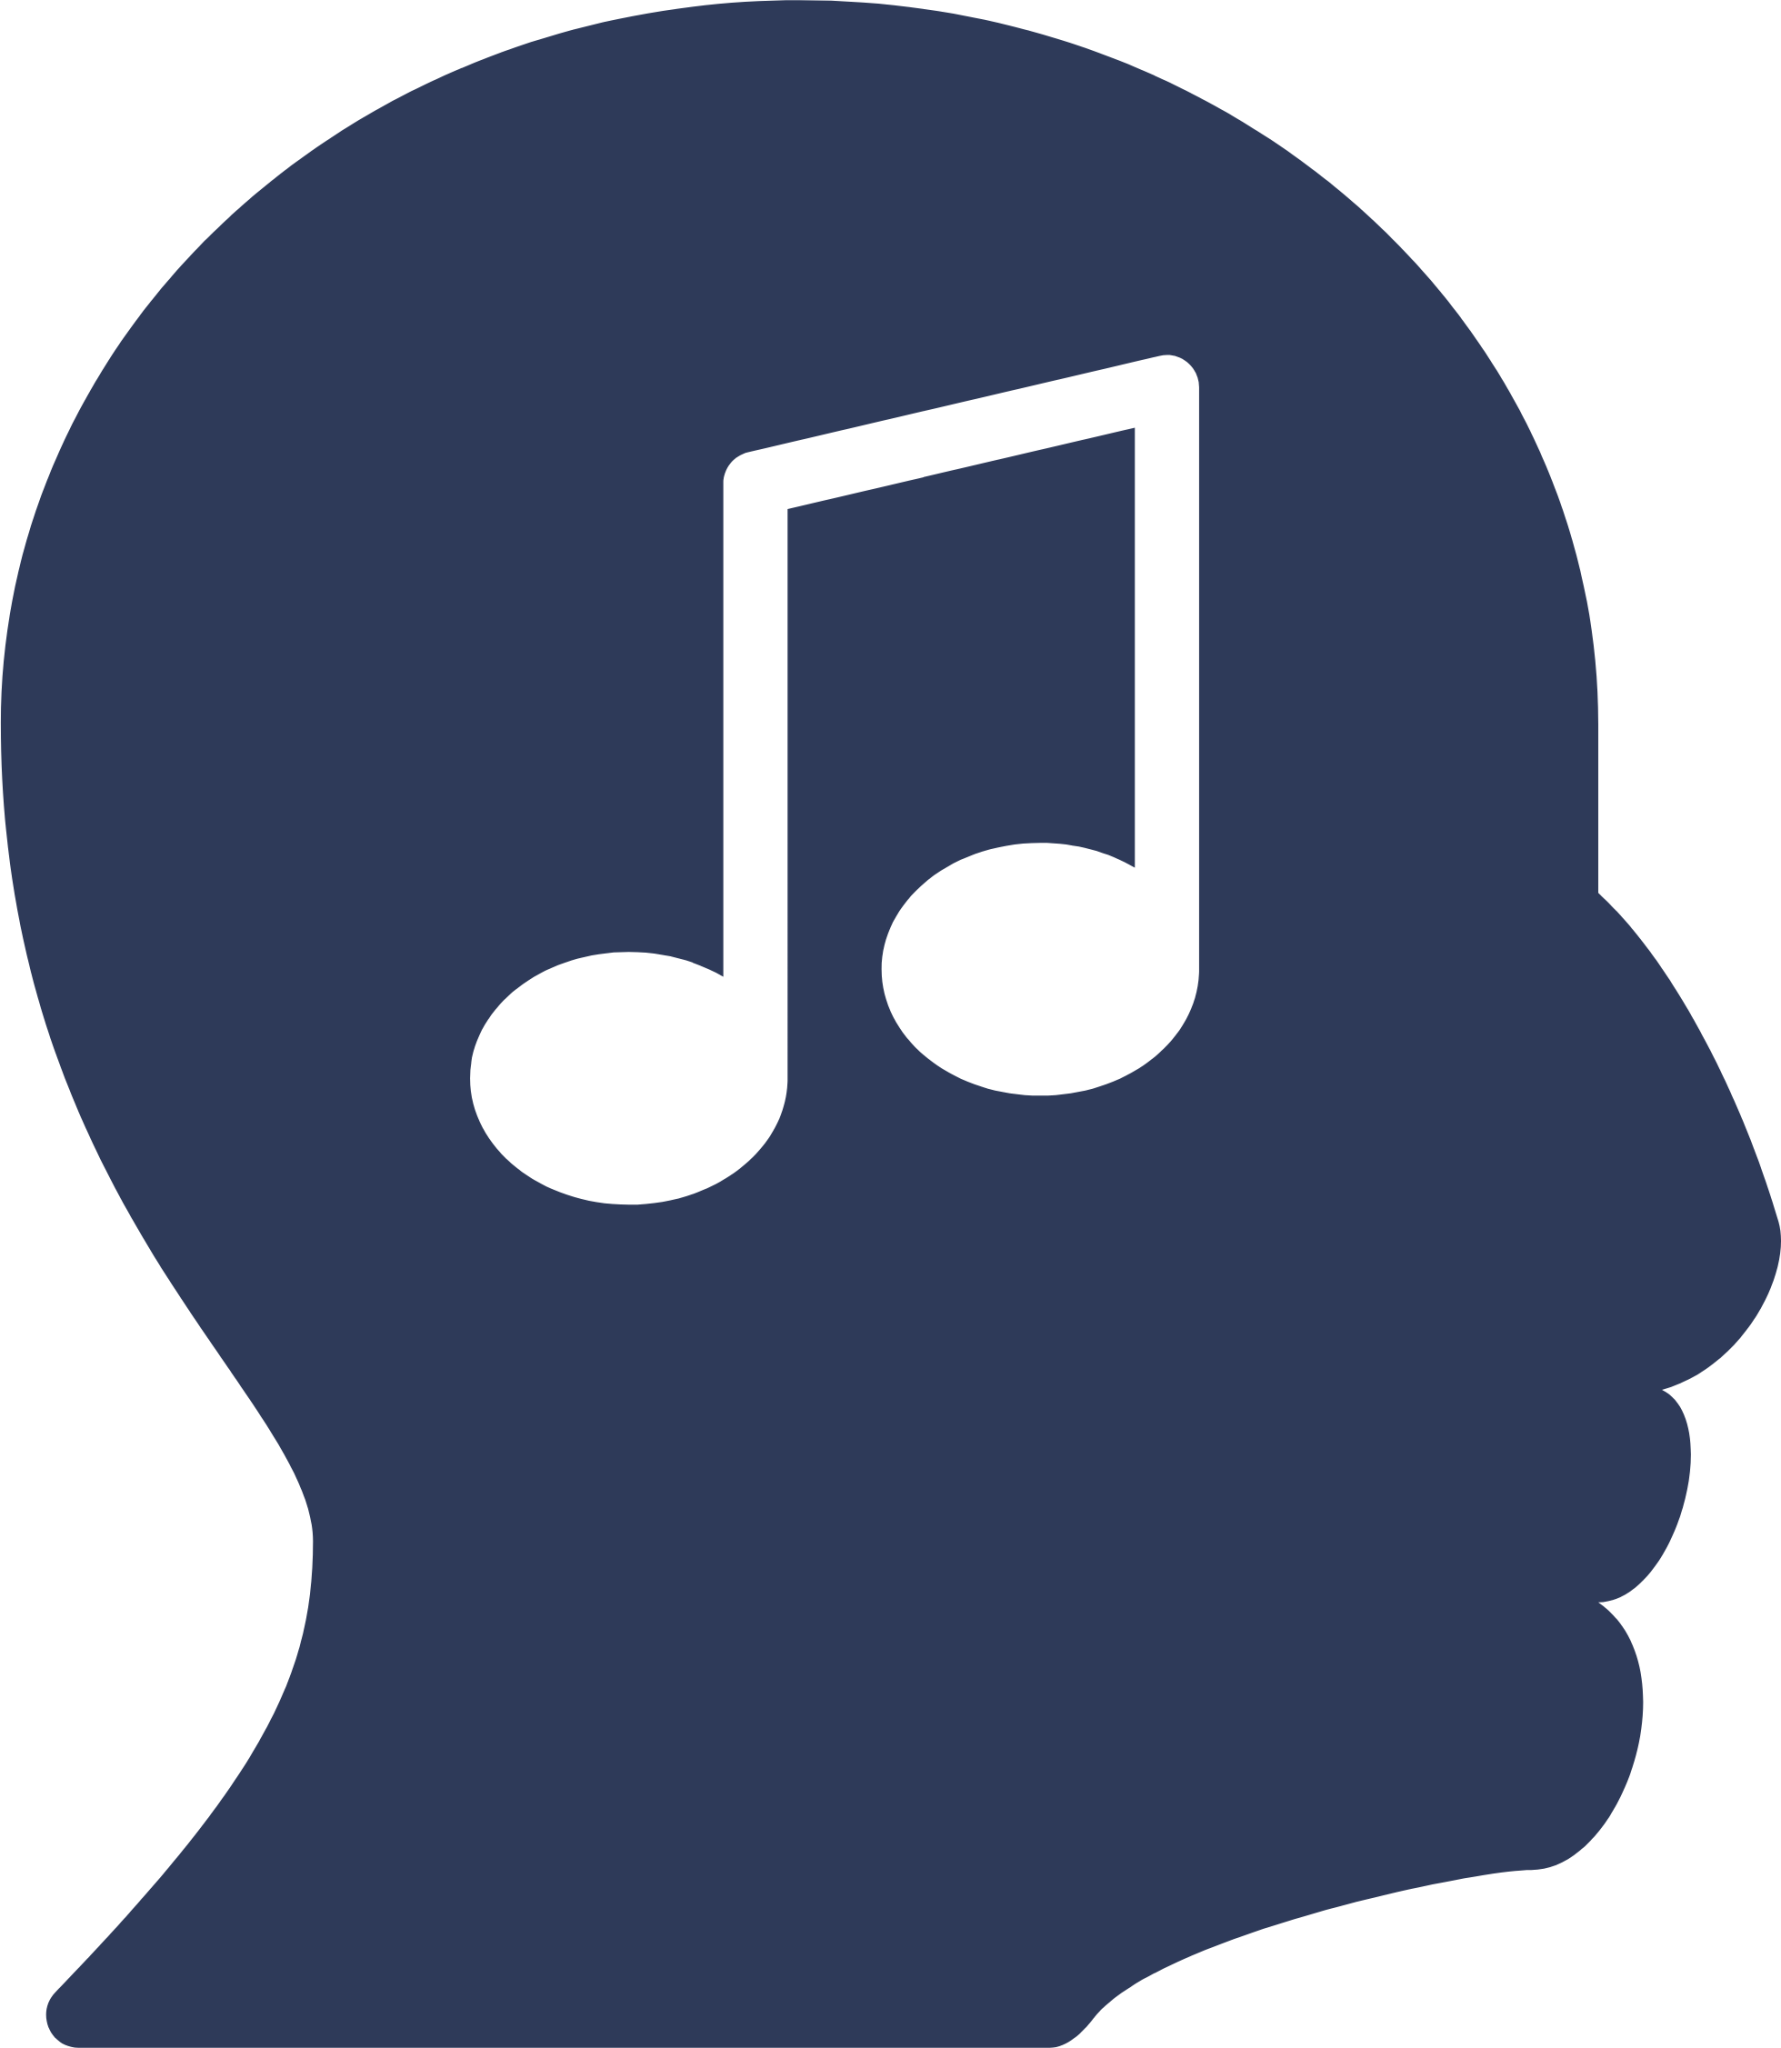 Profile music 1 icon